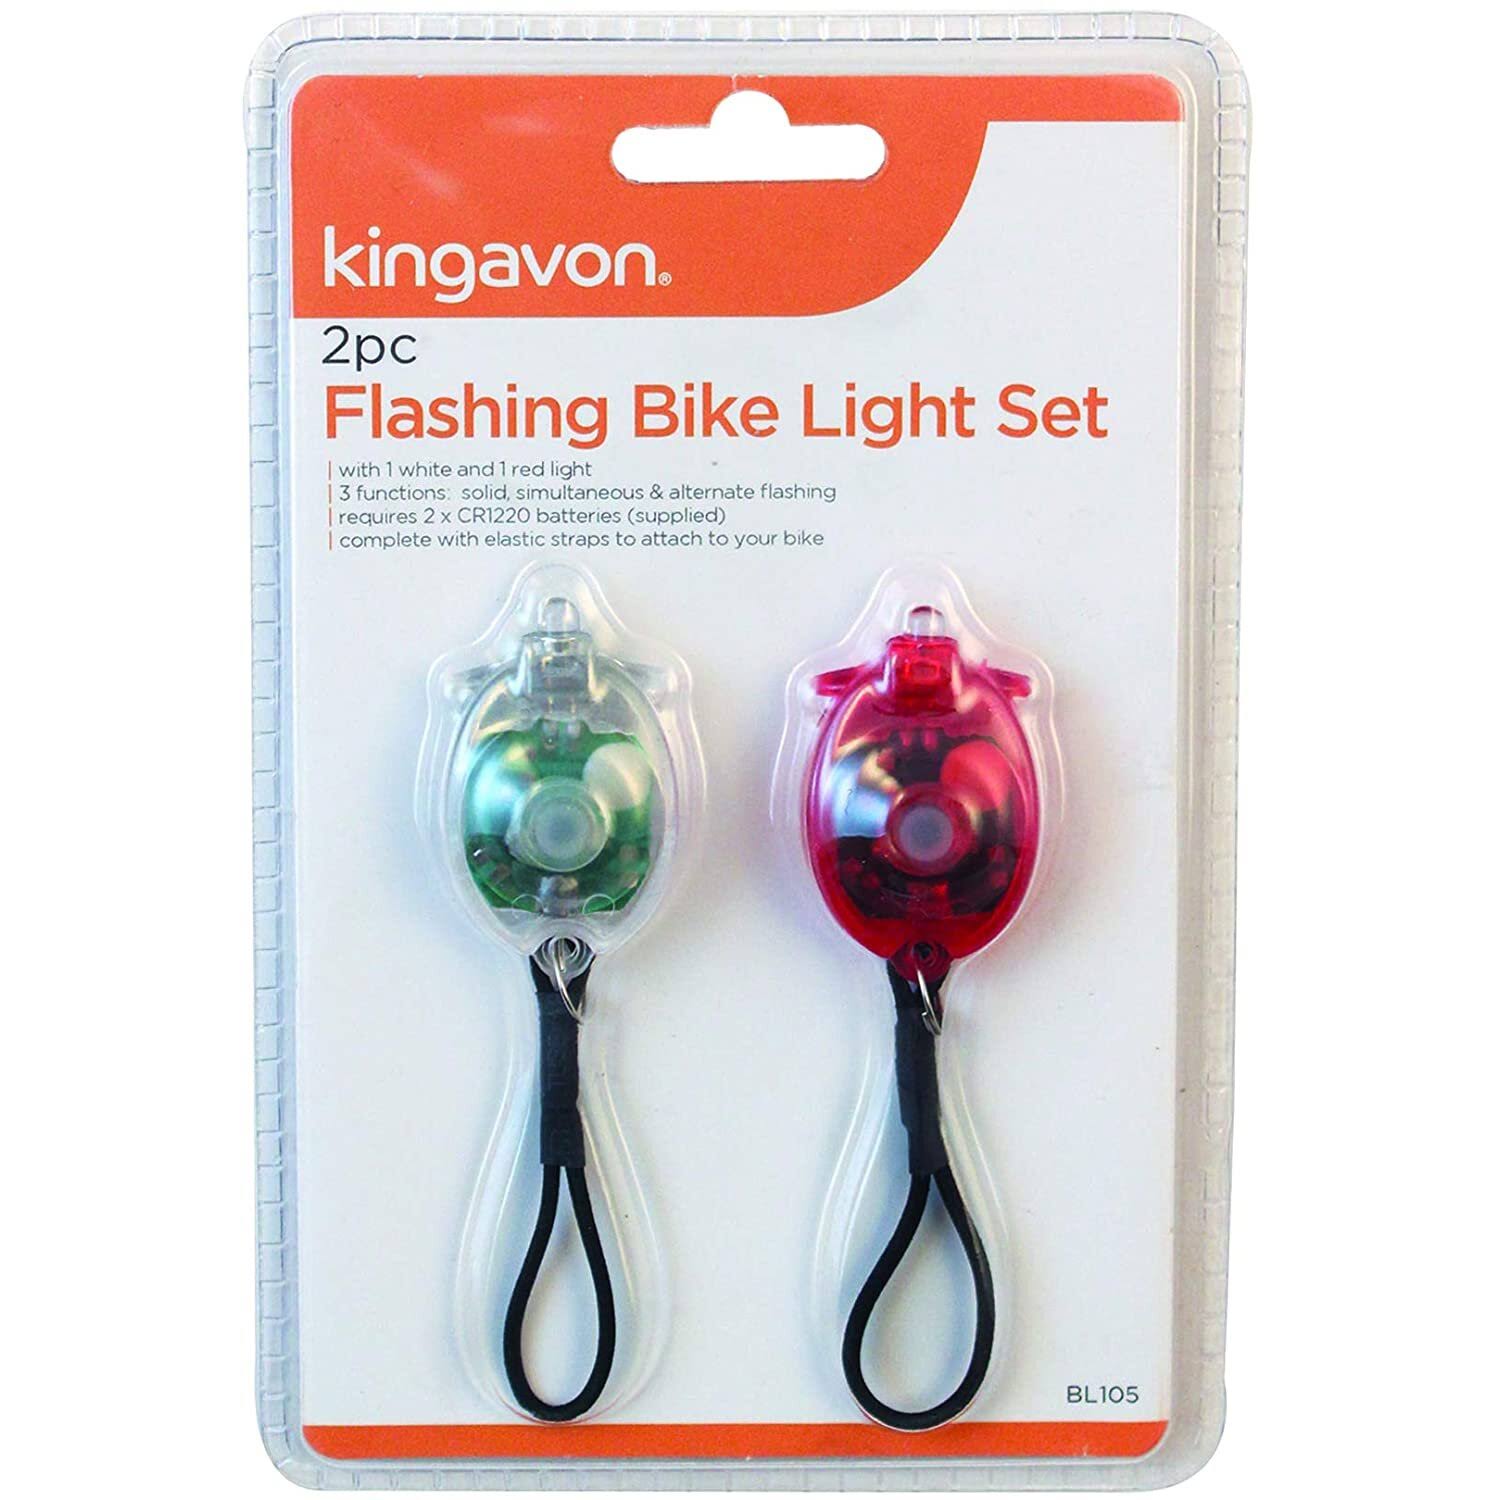 Kingavon 2pc Flashing Bike Light Set